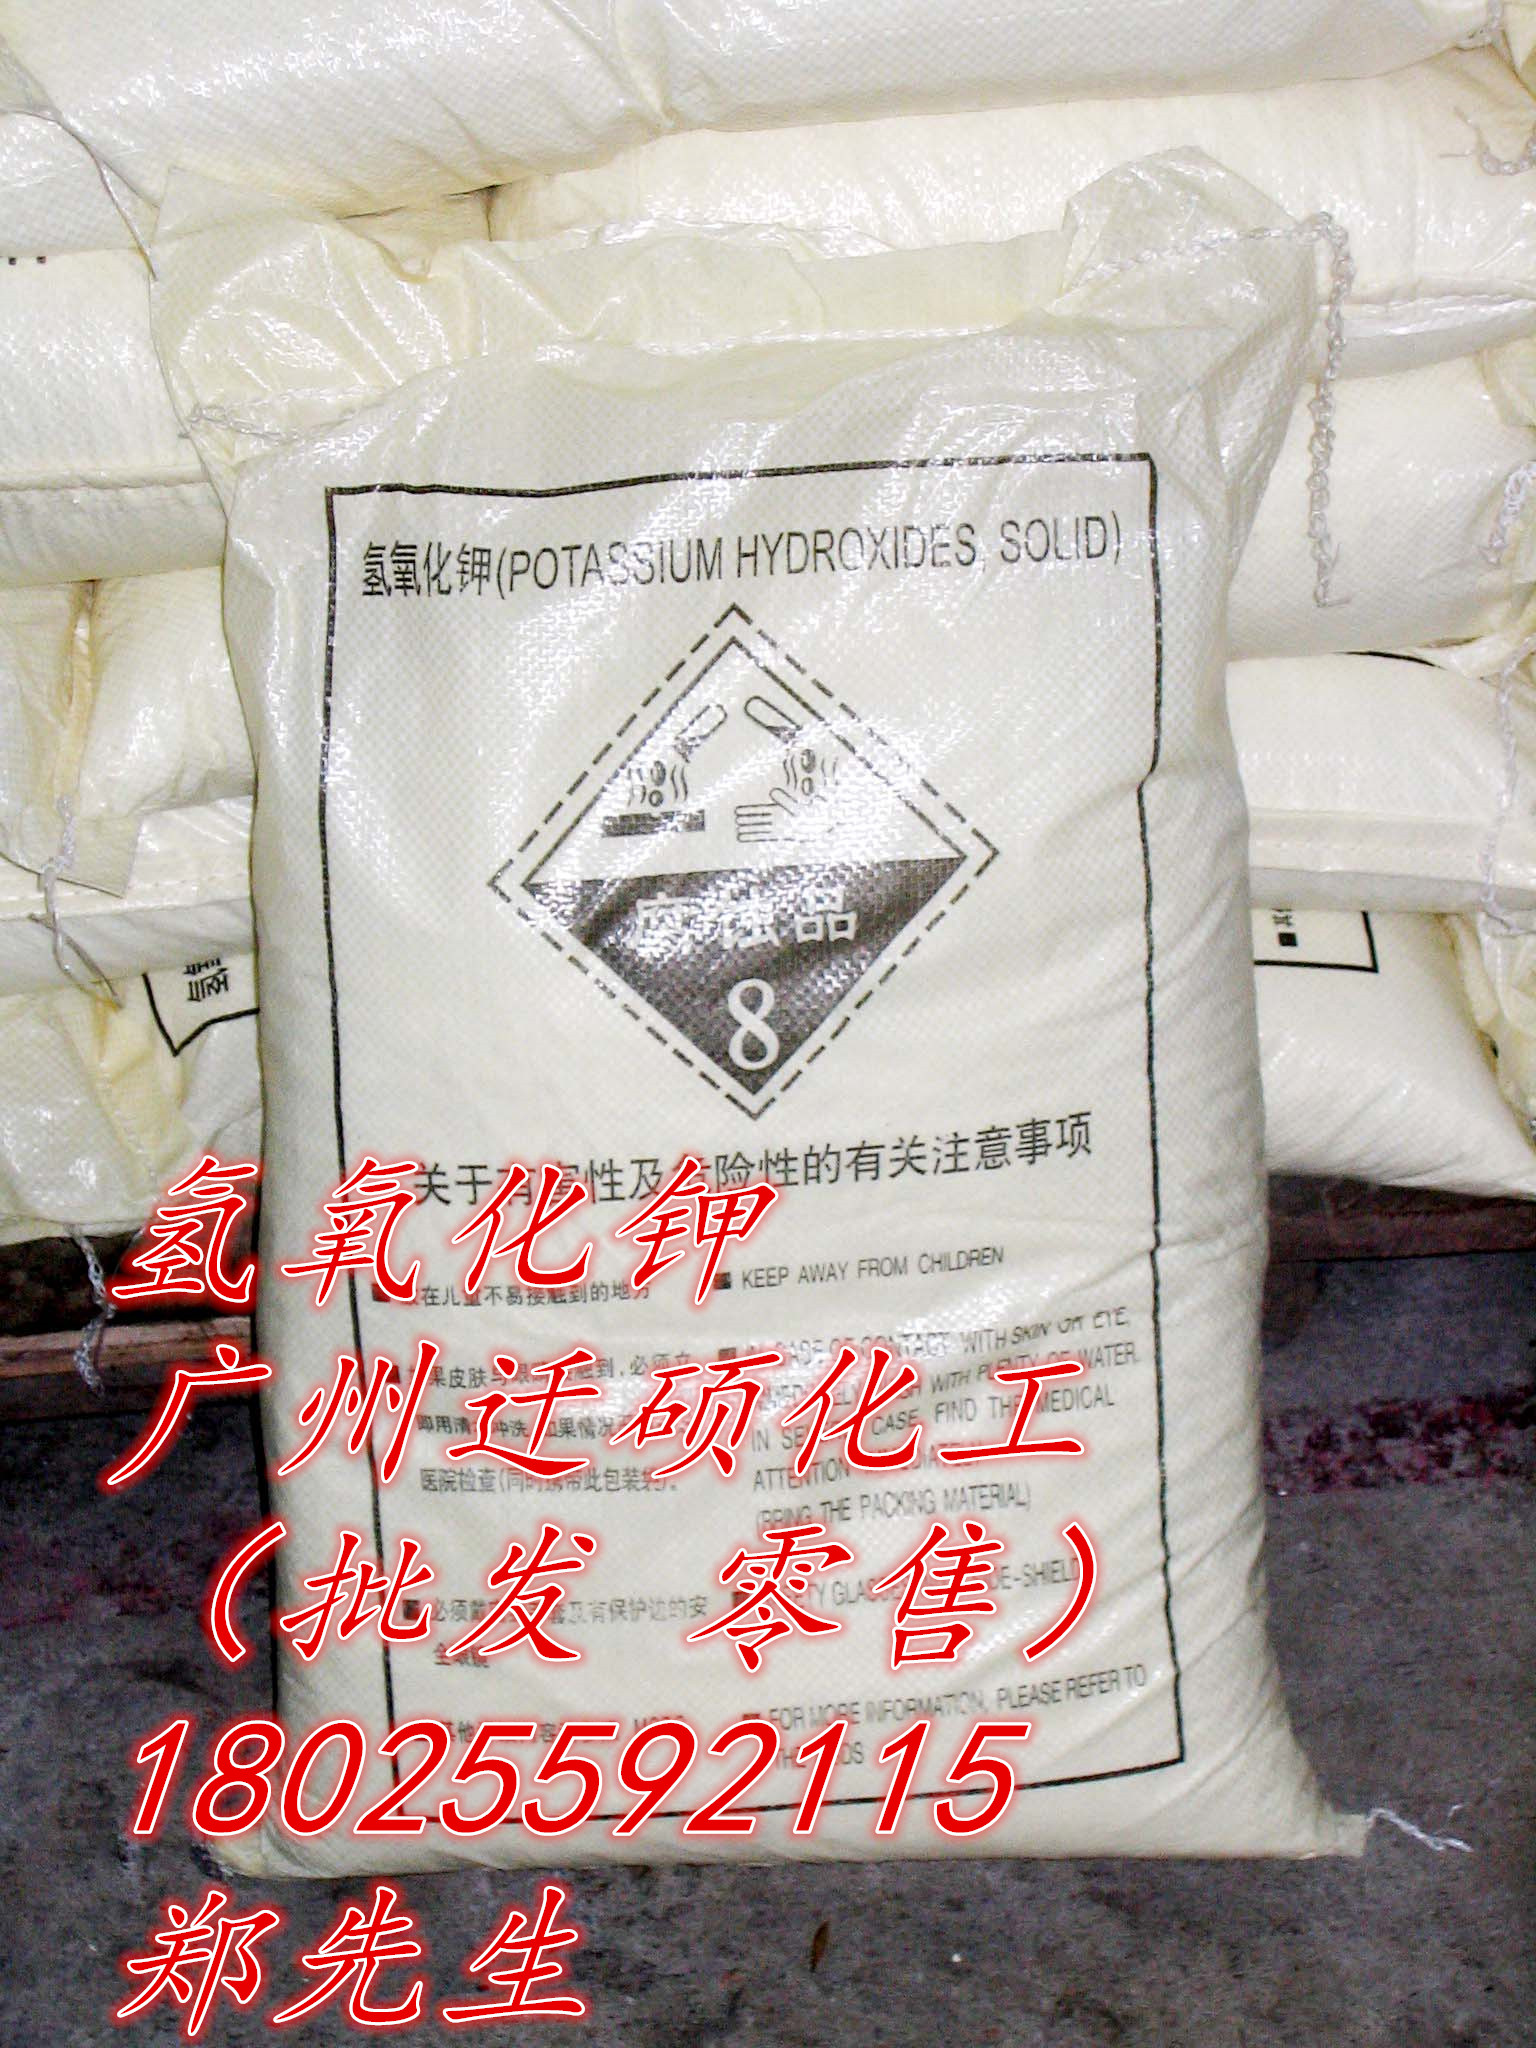 江苏优利德氢氧化钾90%95% 广州迁硕